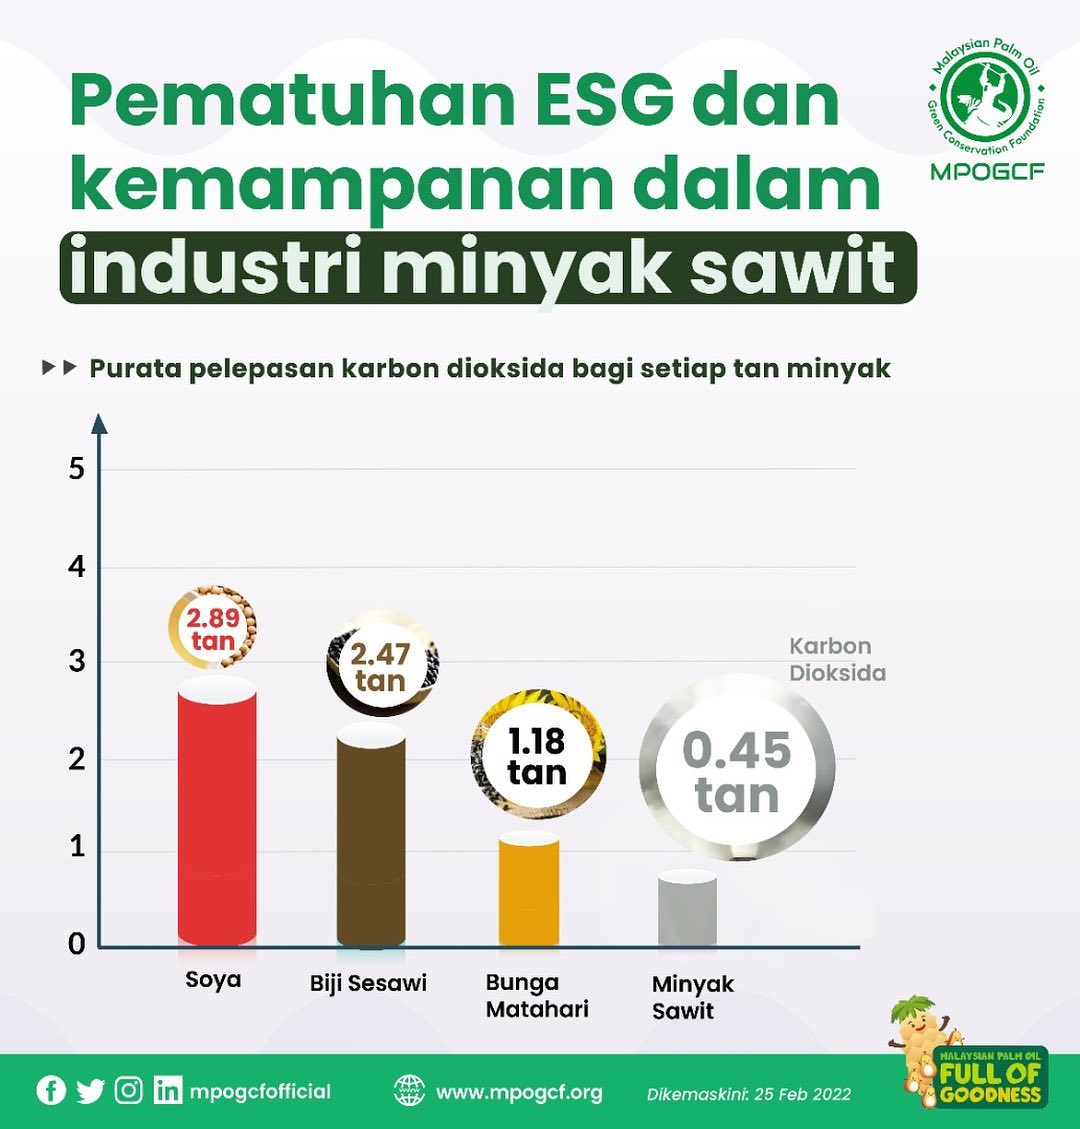 Pematuhan ESG dan kemampanan dalam industri minyak sawit